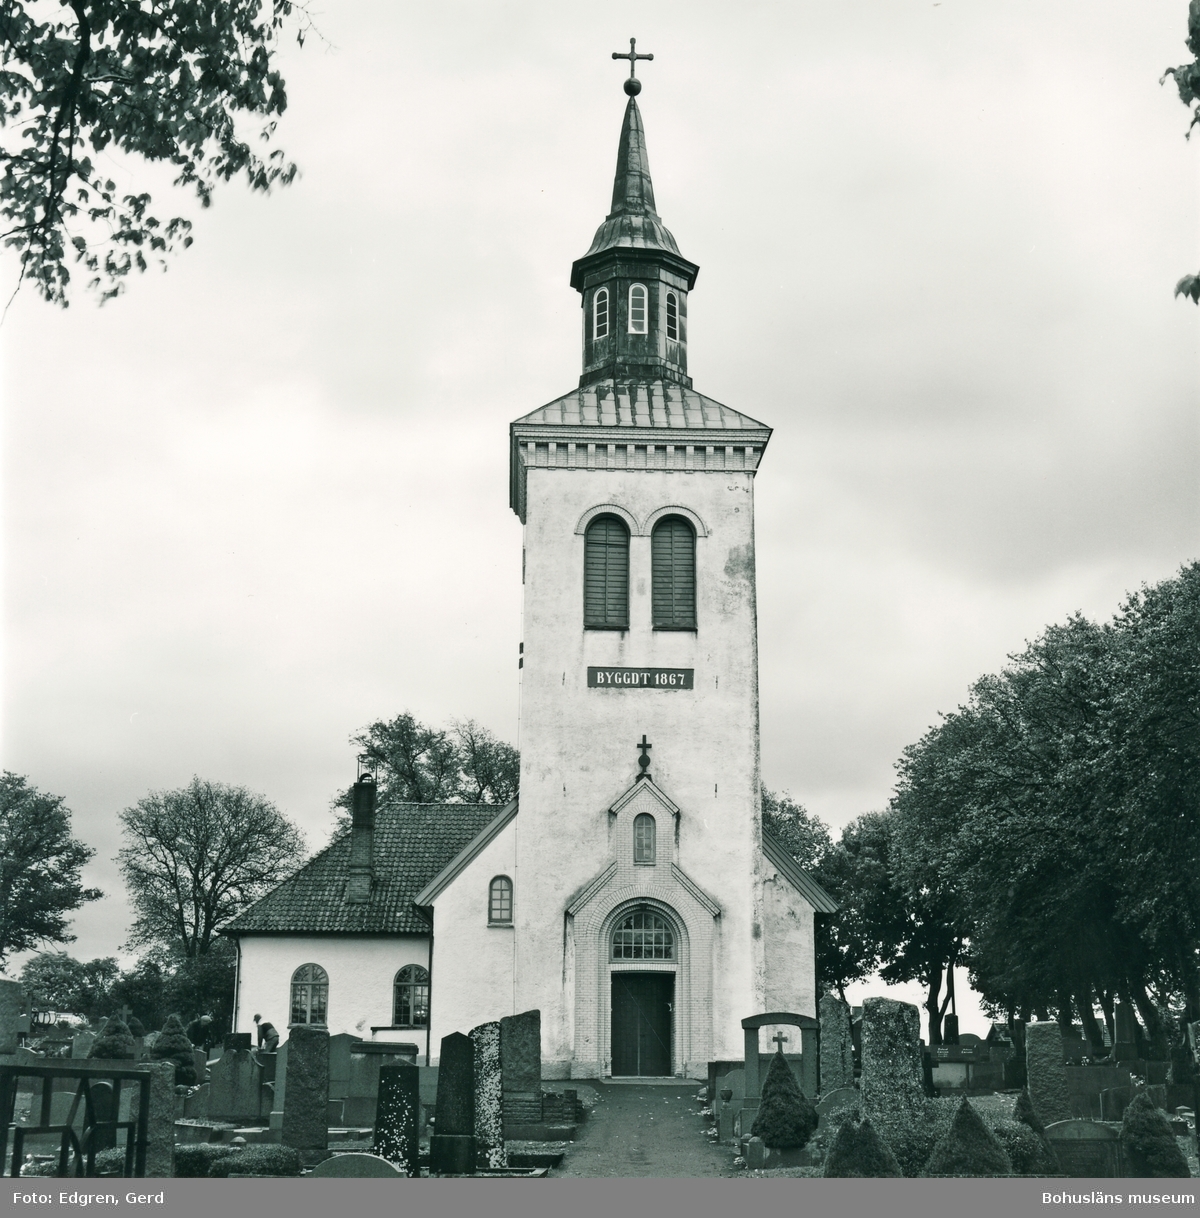 Text till bilden: "Solberga kyrka".